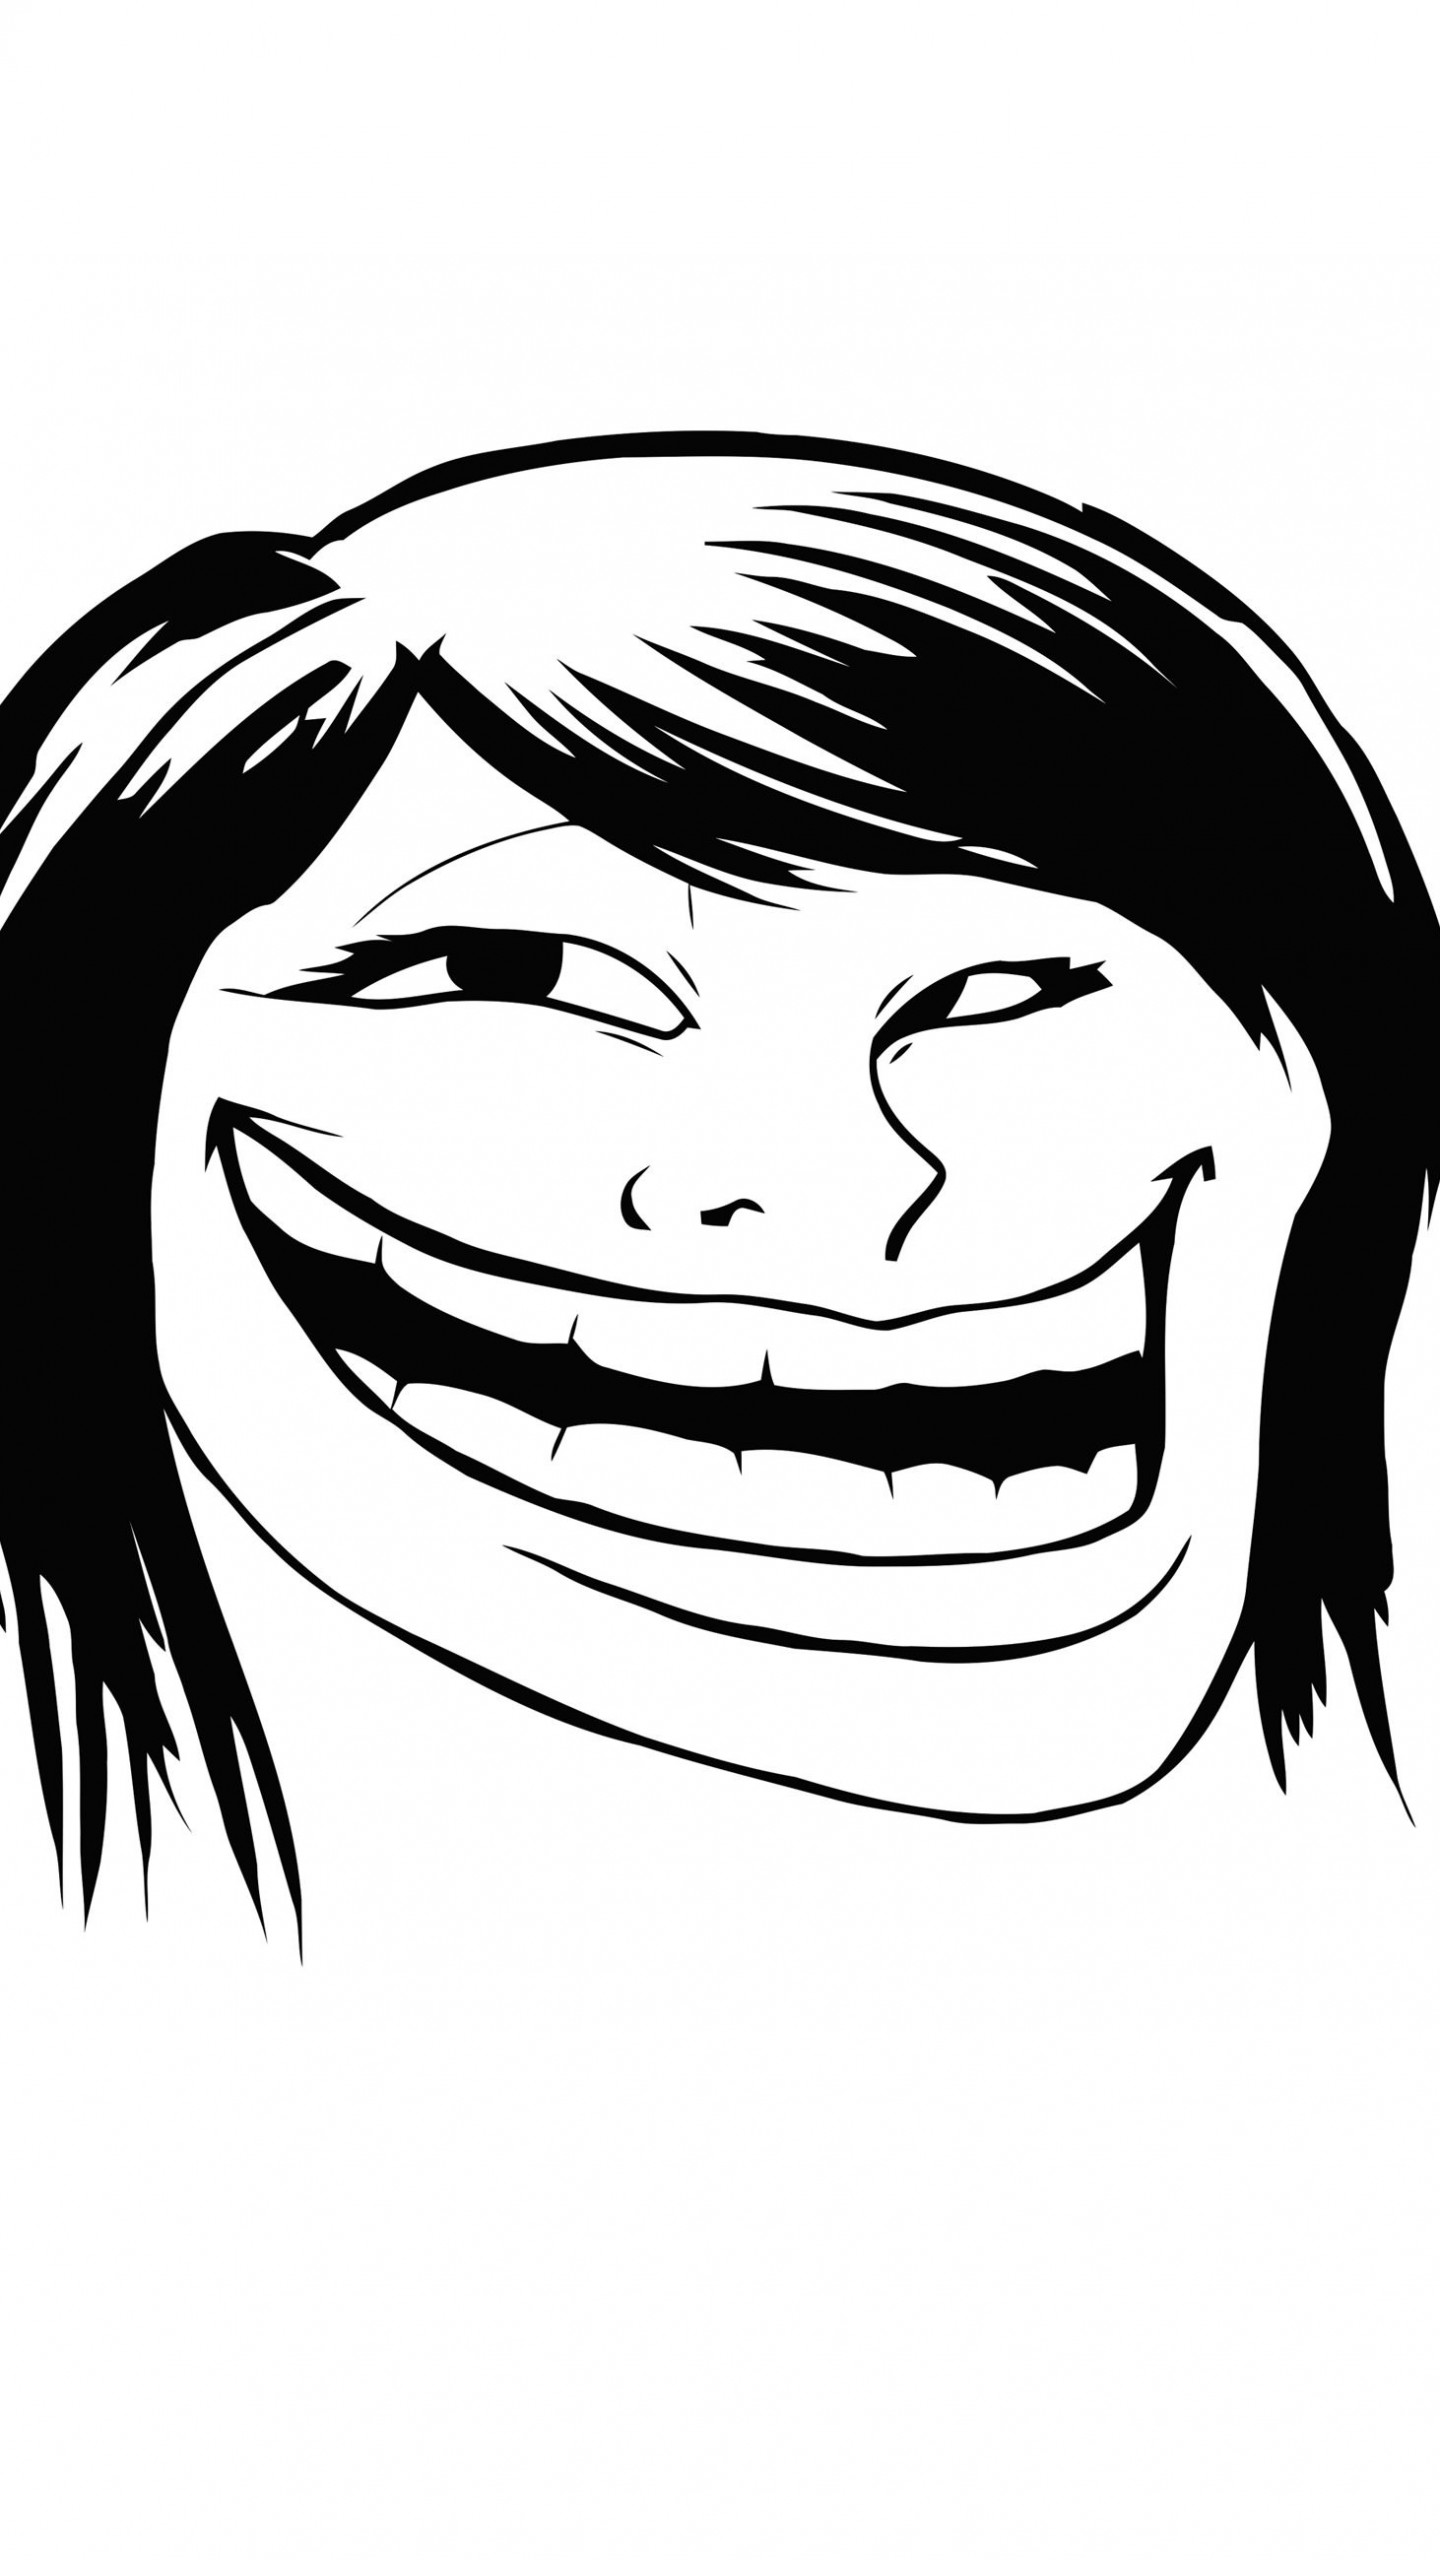 Female Troll Face Meme Wallpaper for Google Nexus 6